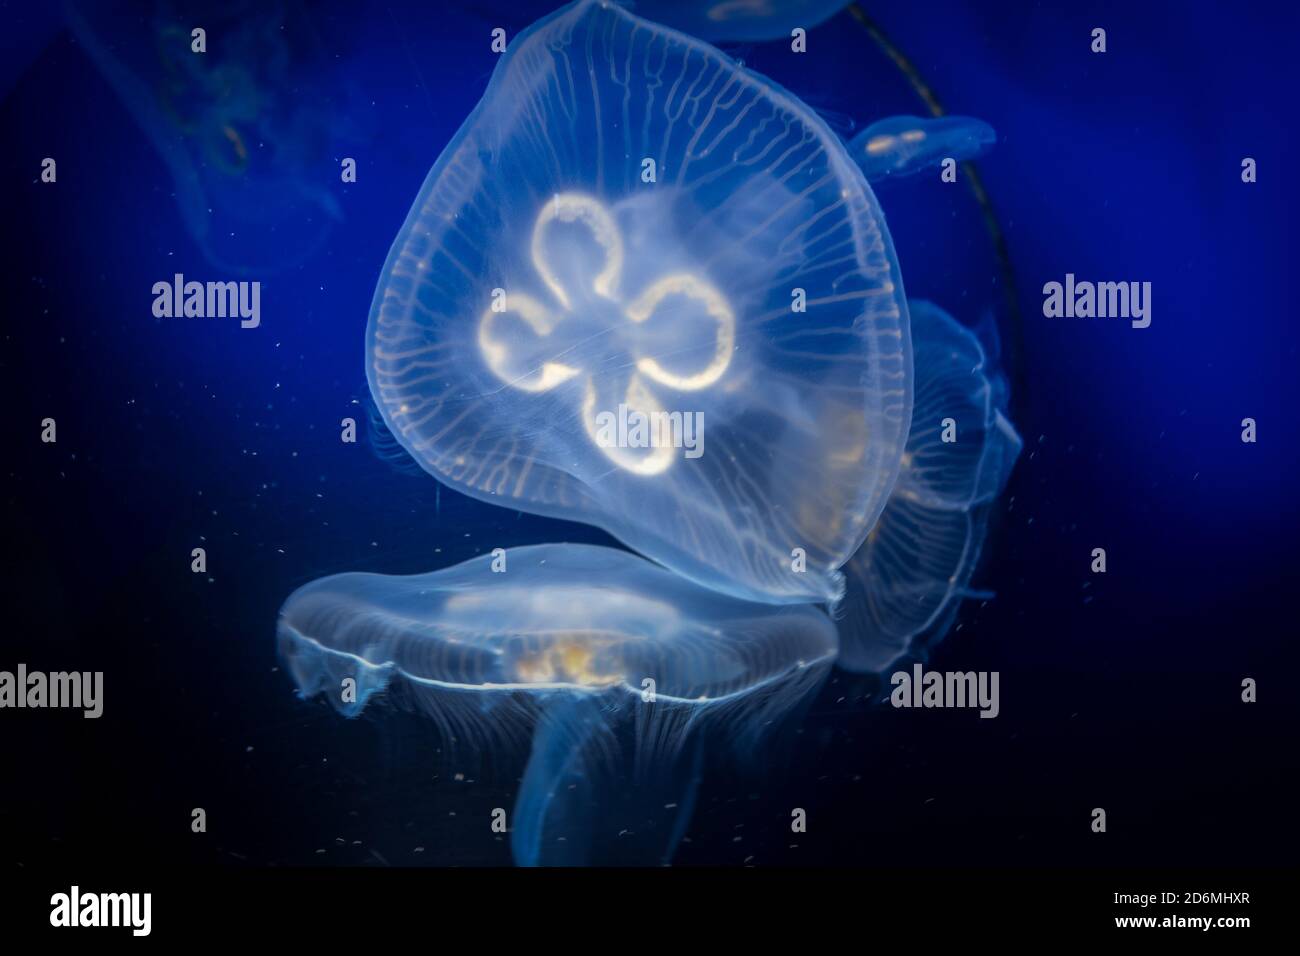 Common jellyfish, Aurelia aurita, underwater close-up view Stock Photo